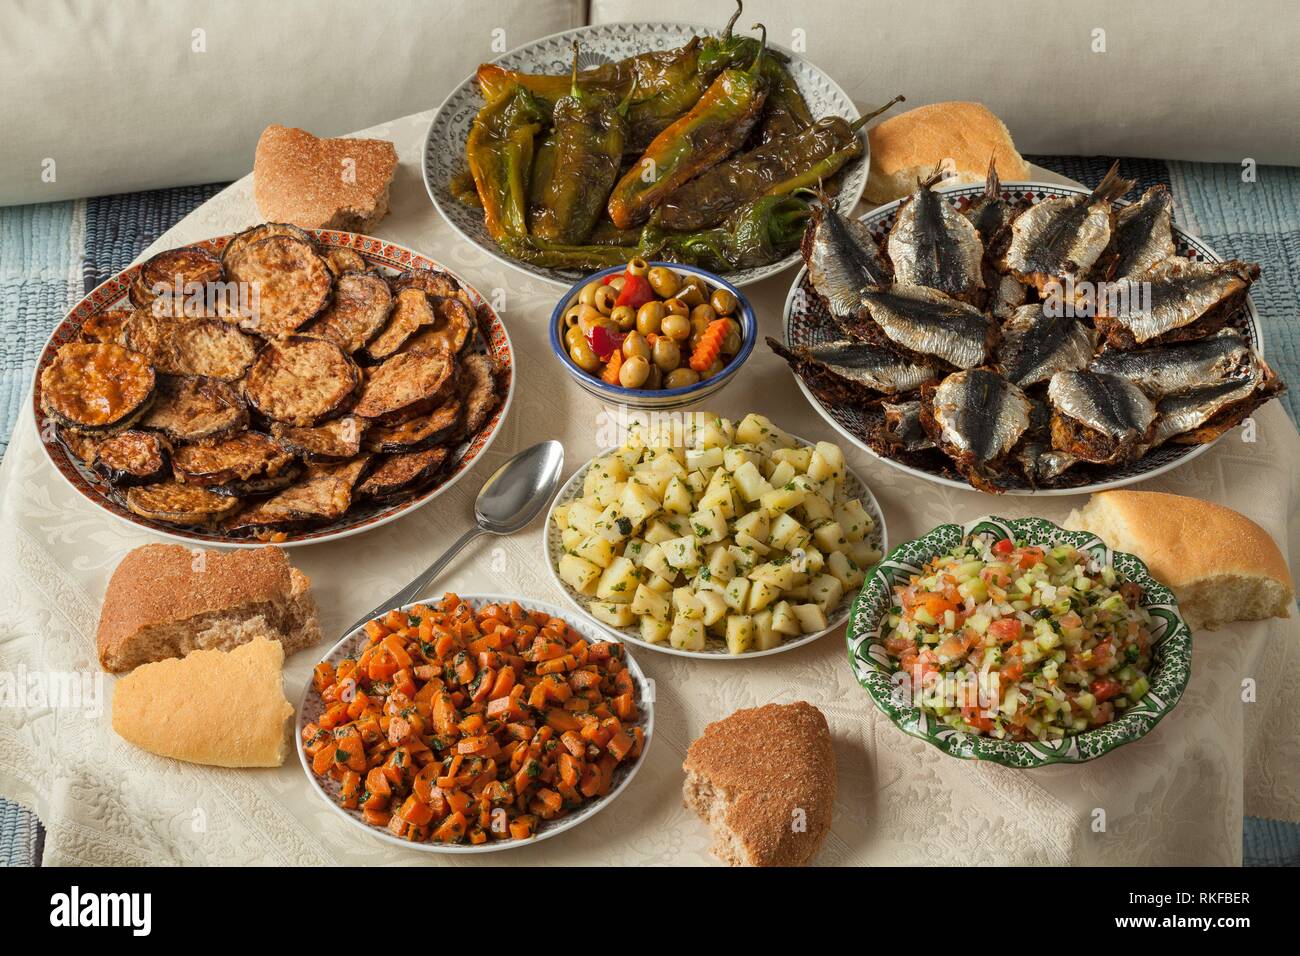 Comida marroquí con una variedad de platos con sardinas cocinadas frescas, verduras y pan. Foto de stock